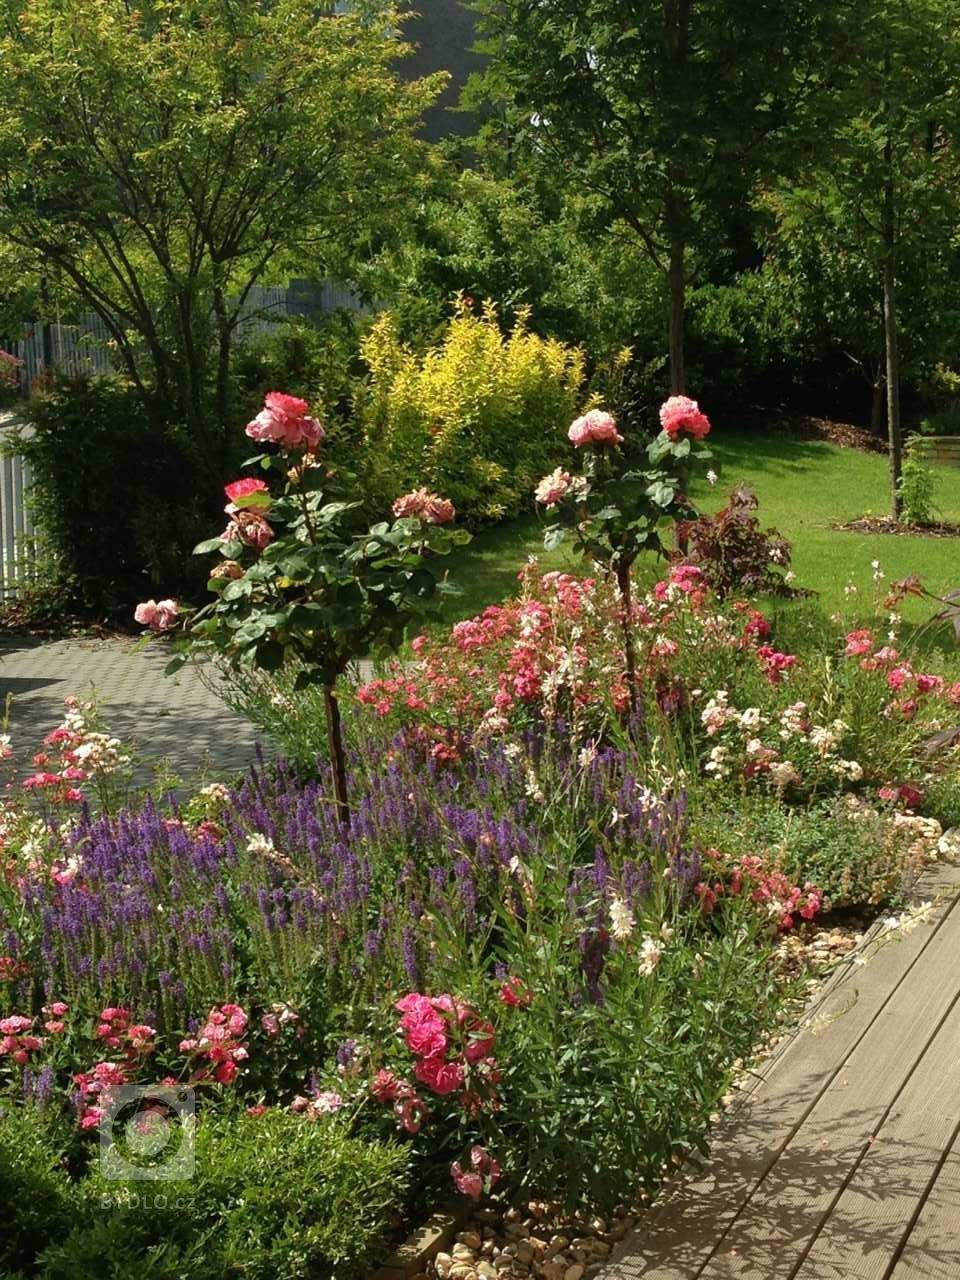 Romantickou zahradu plnou růží jsme vydupali ze země plné plevele, jedna z úžasných realizací našich zahrad.
